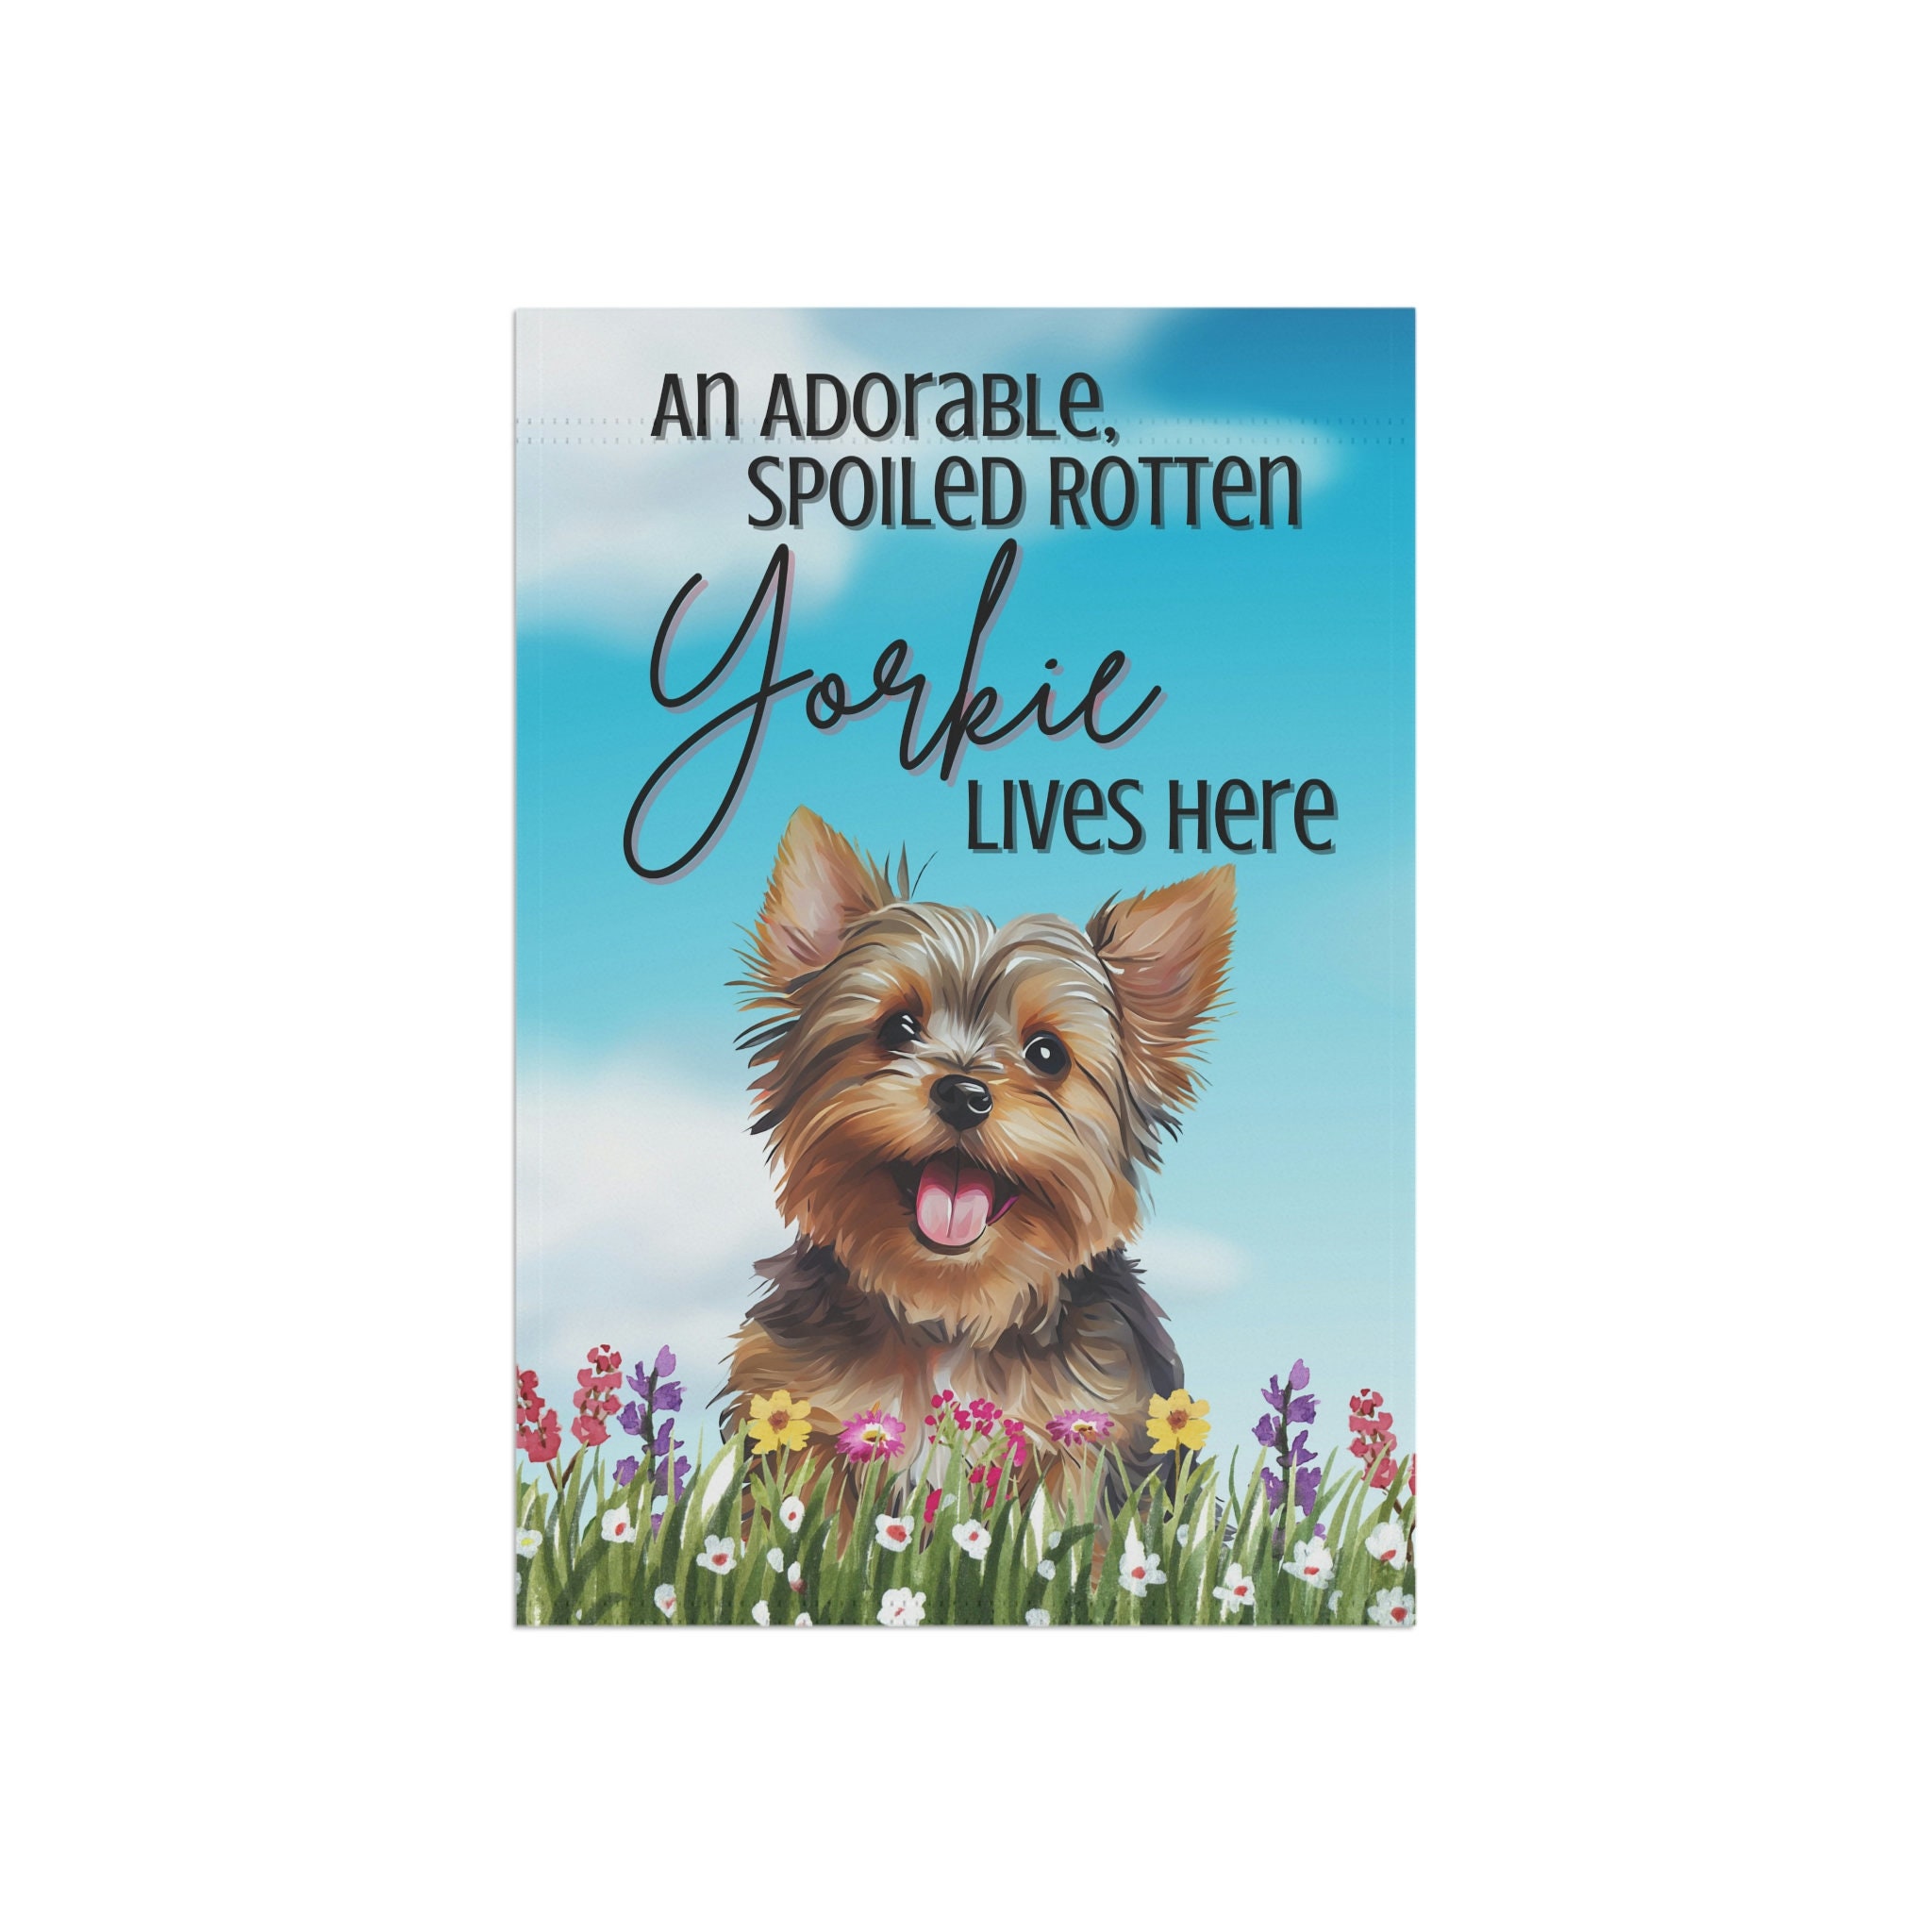 Yorkshire Terrier Garden Flag, Yorkie Dog Flag, Welcome Flag, Yorkie Dog Gift, Dog Lover Gift, Gift For Pet Owner, Yard Sign For Dog Owner